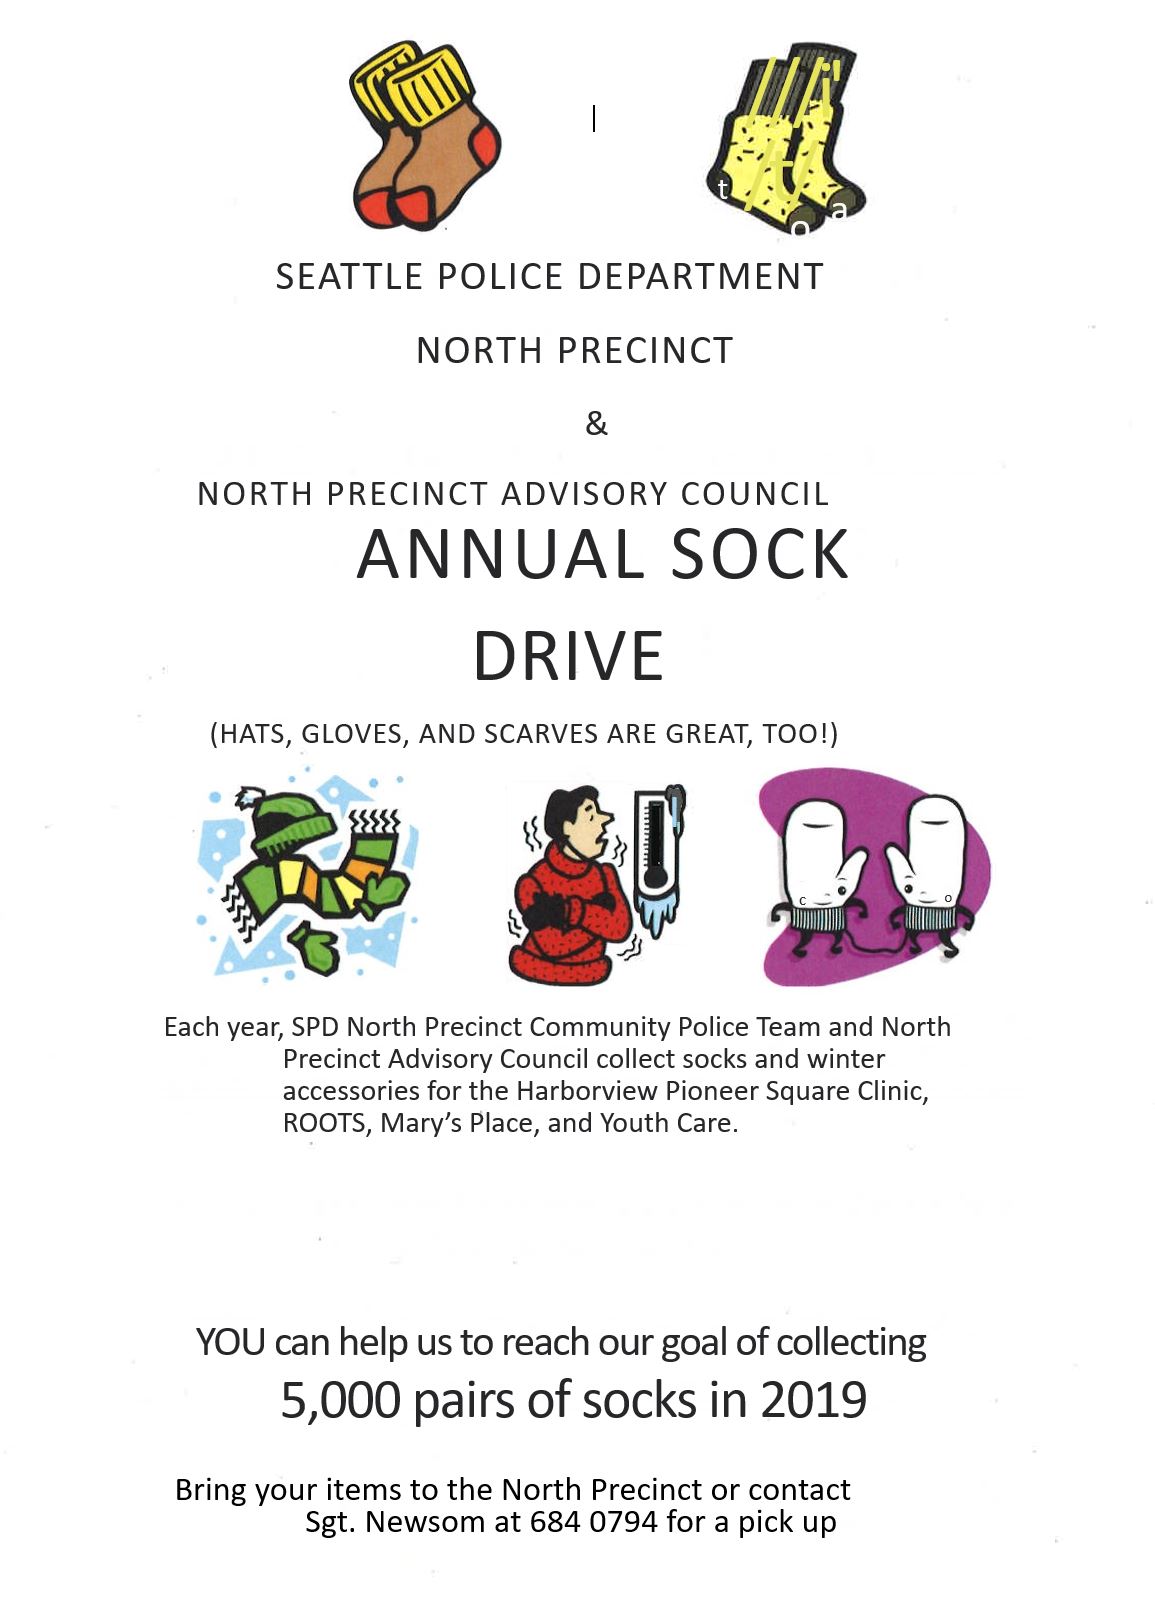 Annual Sock Drive for North Precinct